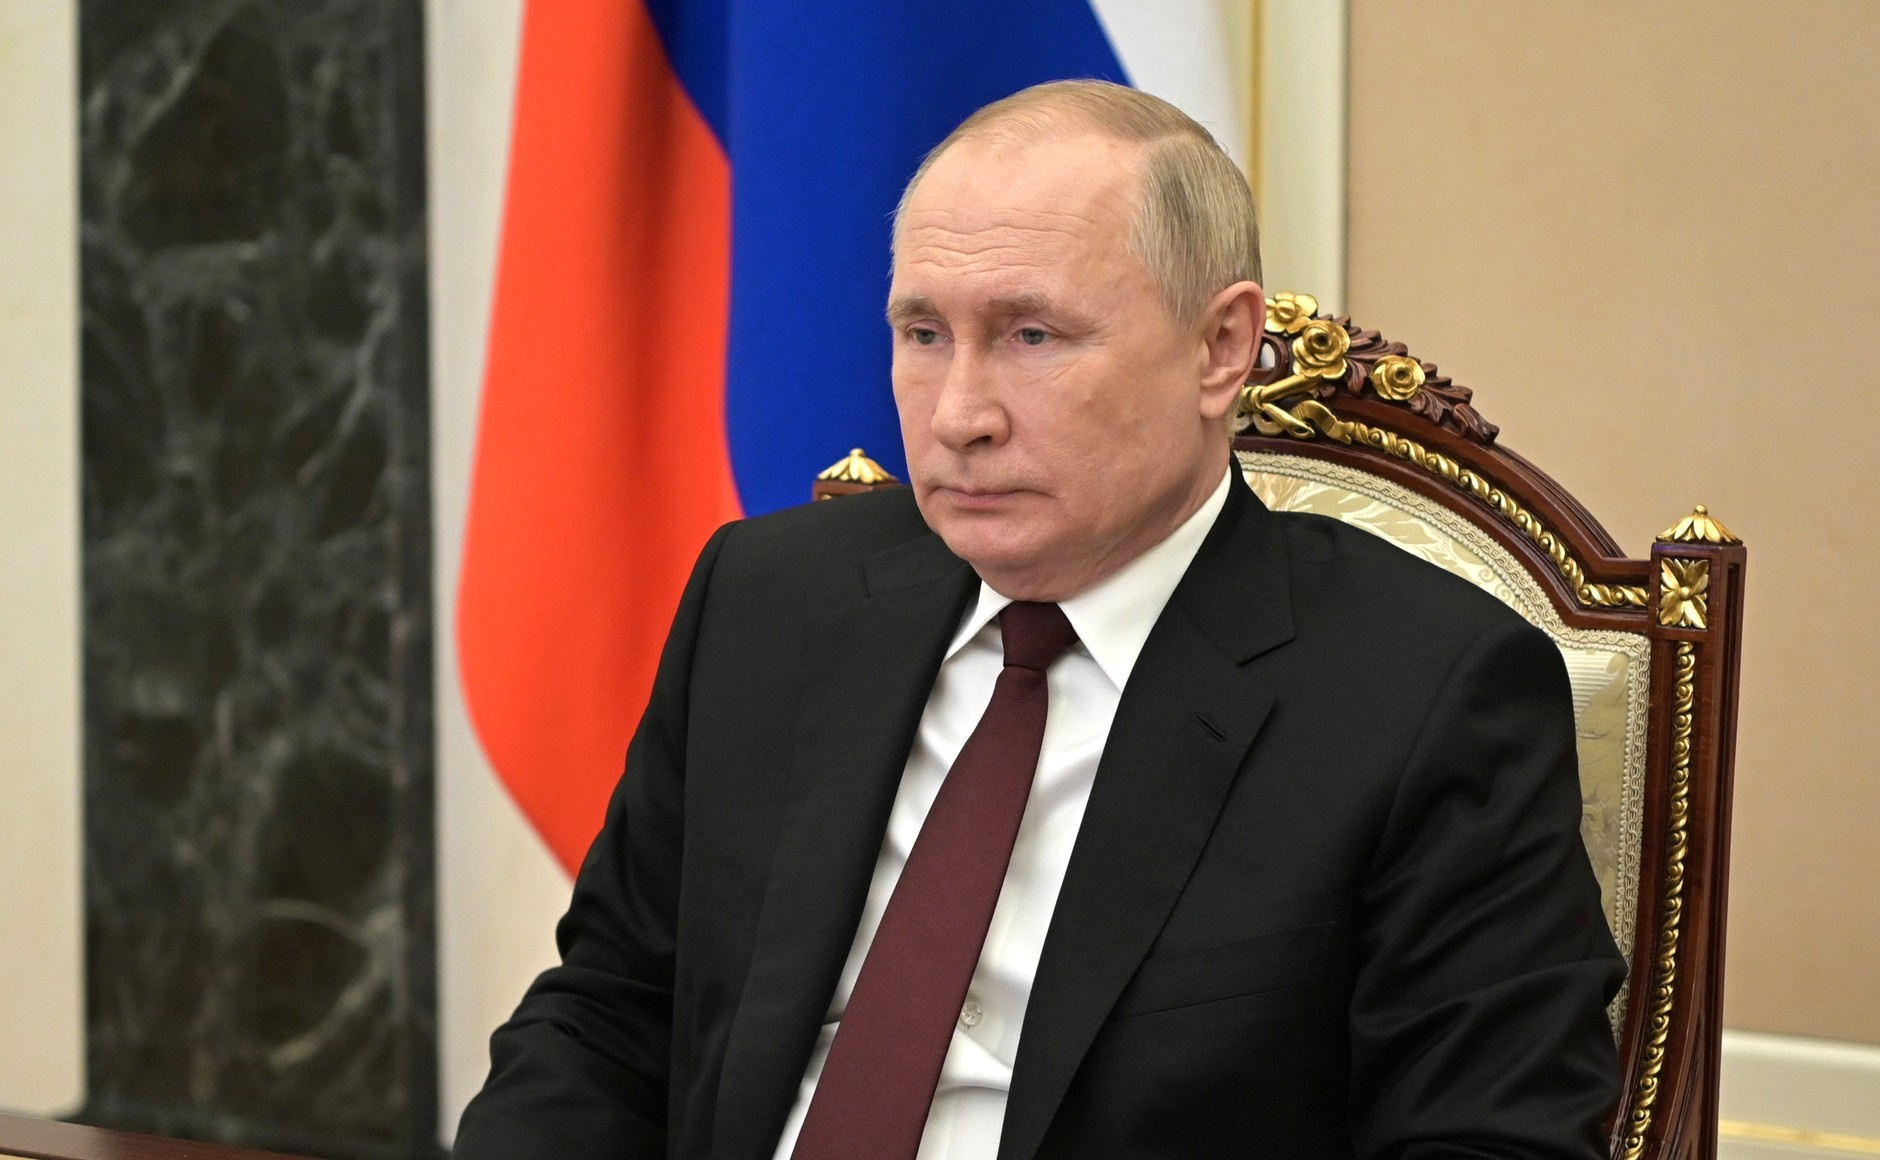 Путин заявил, что обстрелов приграничных районов России не должно быть: новости СВО за 1 февраля